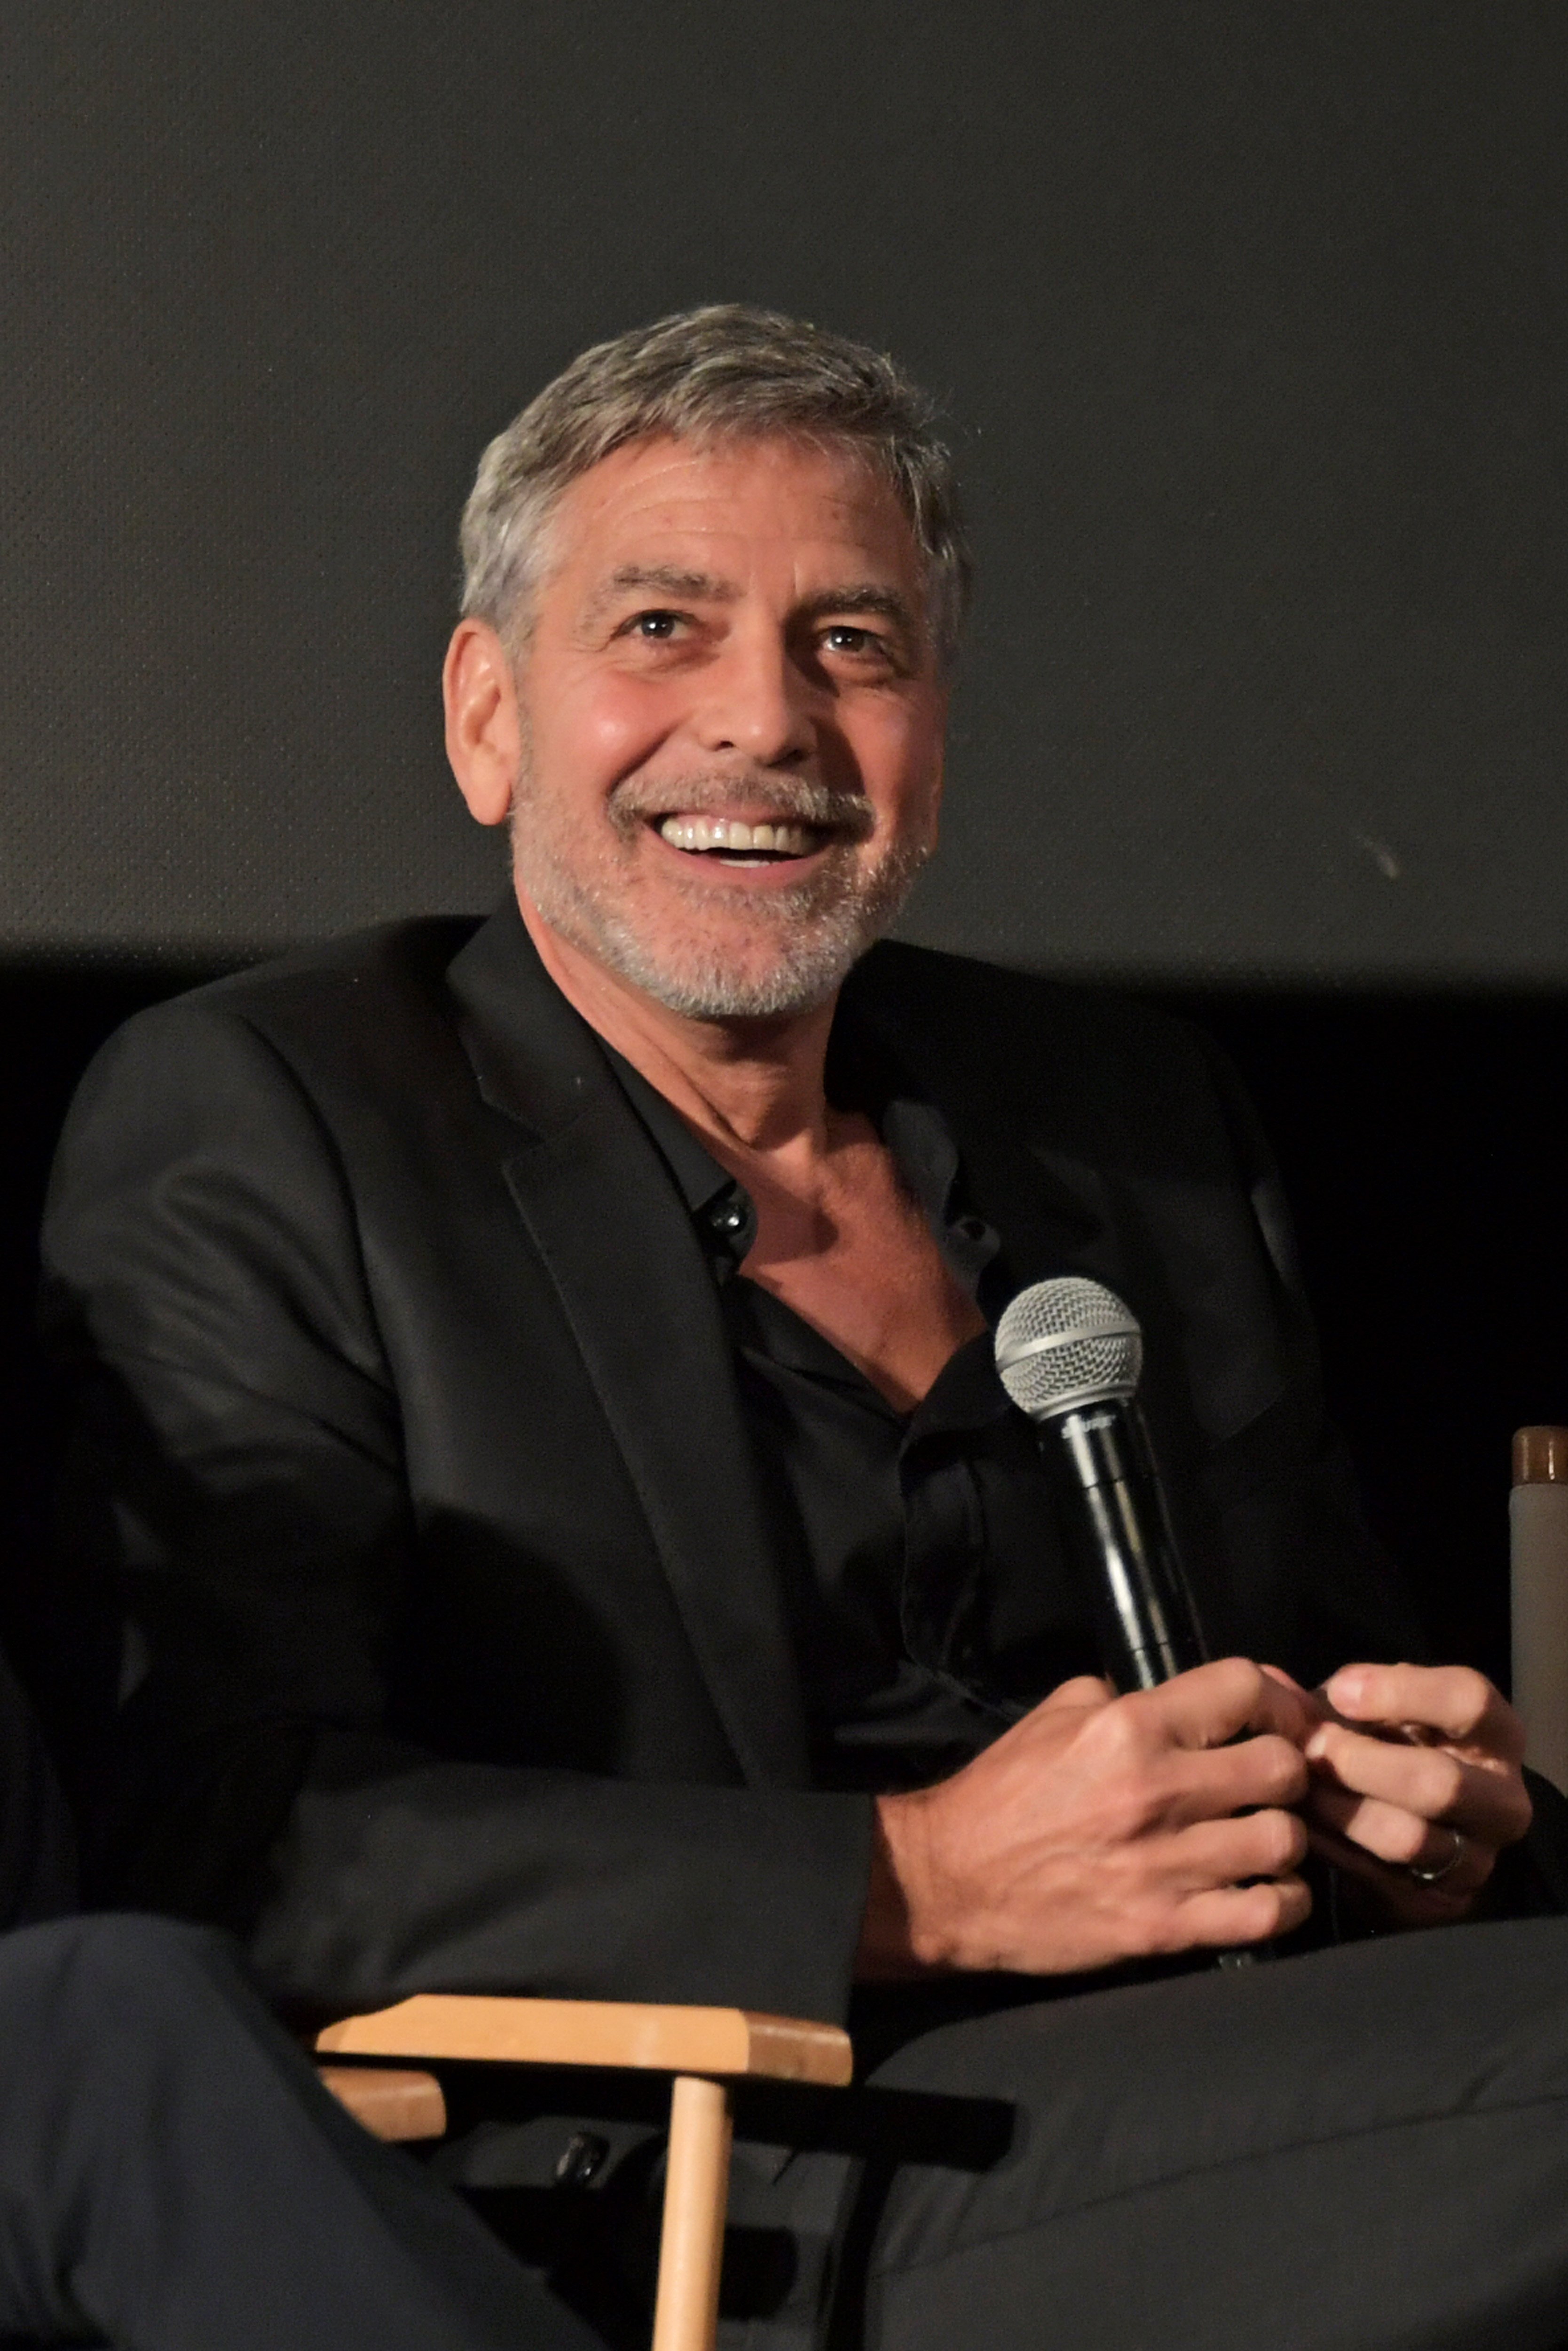 George Clooney en el estreno del nuevo programa de Channel 4 "Catch-22" en Vue Westfield, el 15 de mayo de 2019 en Londres, Inglaterra. | Foto: Getty Images